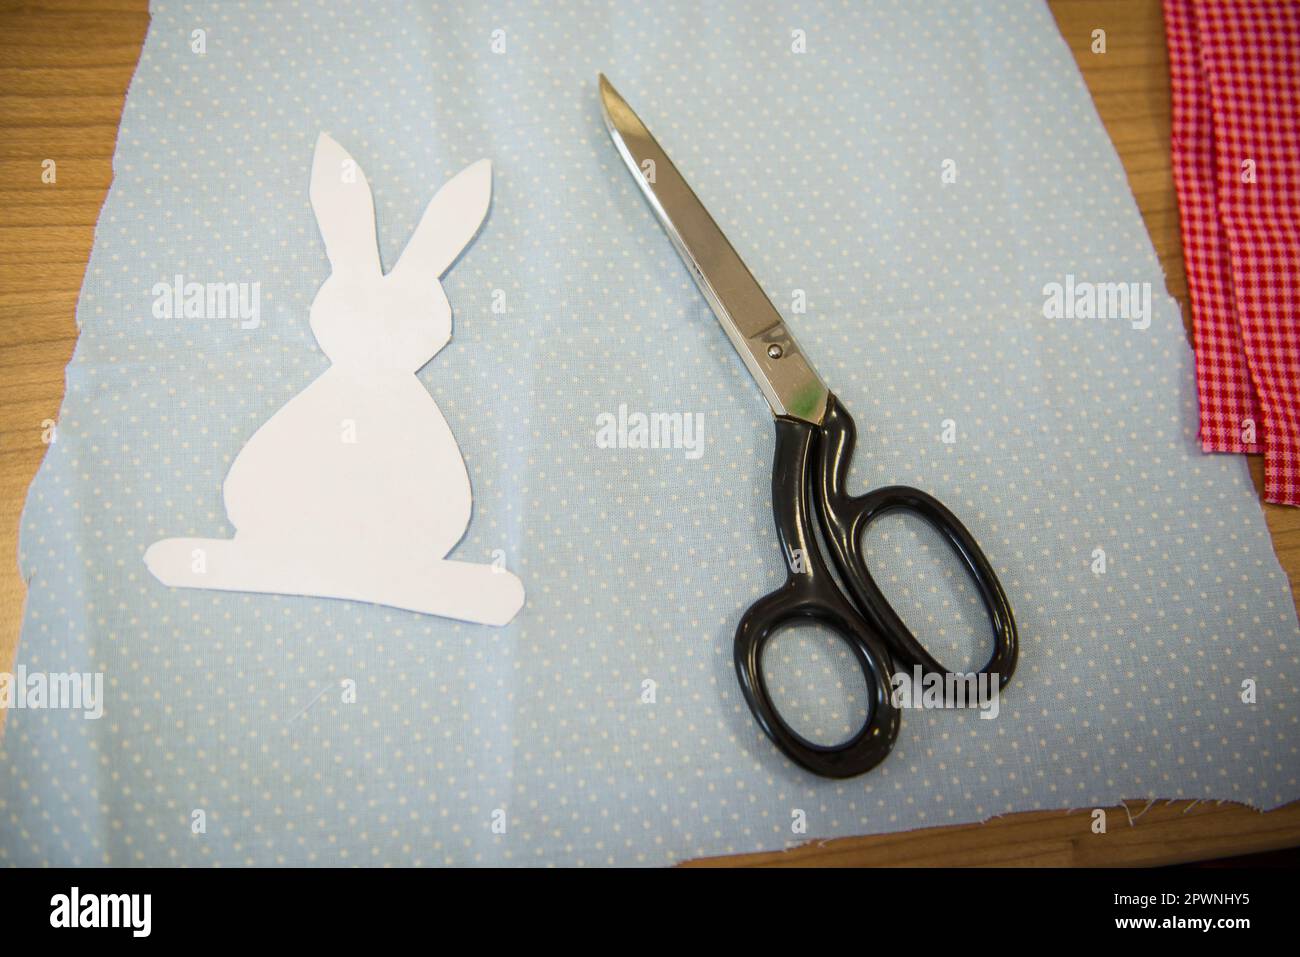 Coupe en forme de lapin pour la décoration pendant Pâques Banque D'Images